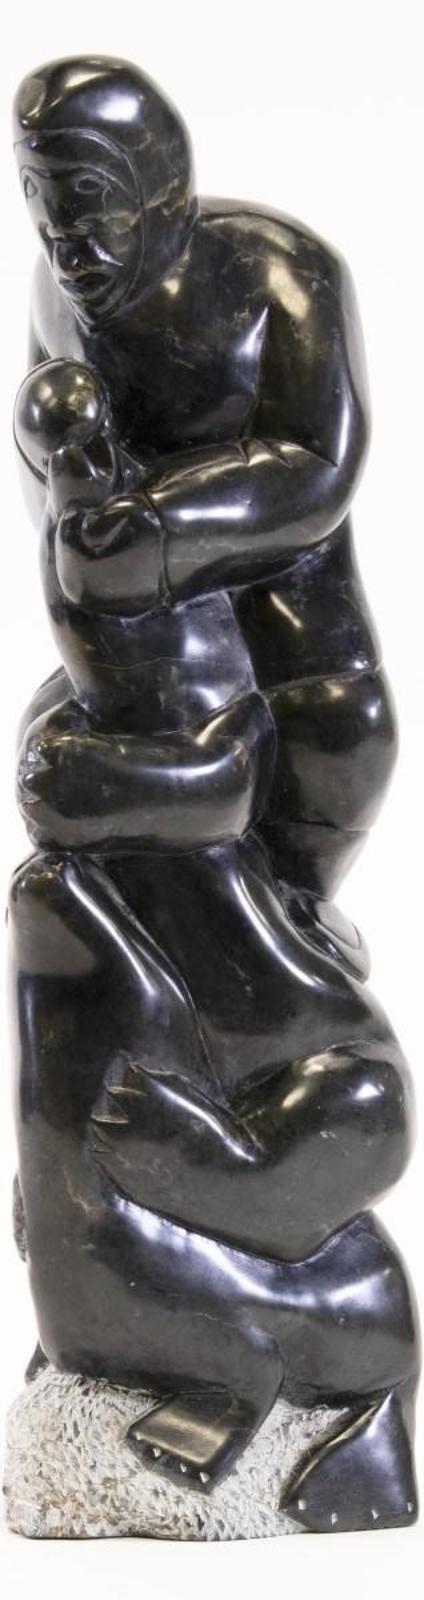 Adamie Ningeok (1948) - Three Figure Totem (Seal, Bear, Man); 1982